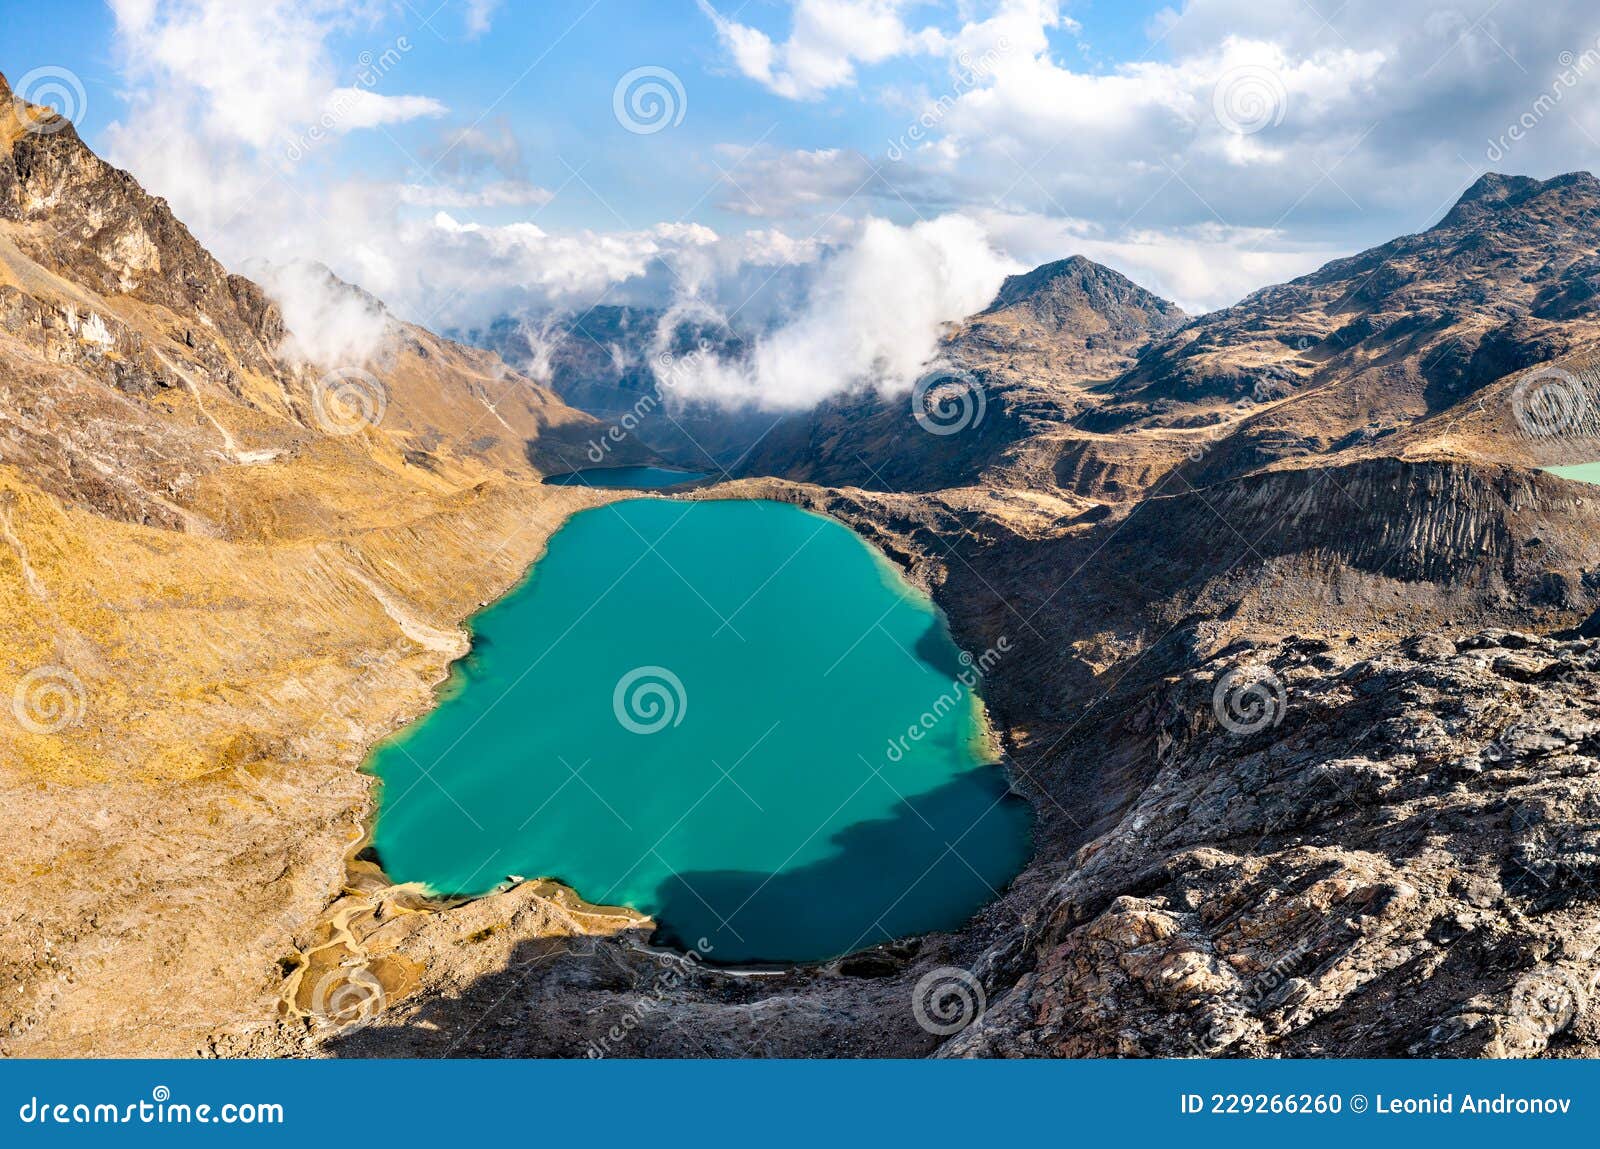 lake at the huaytapallana mountain range in huancayo, peru